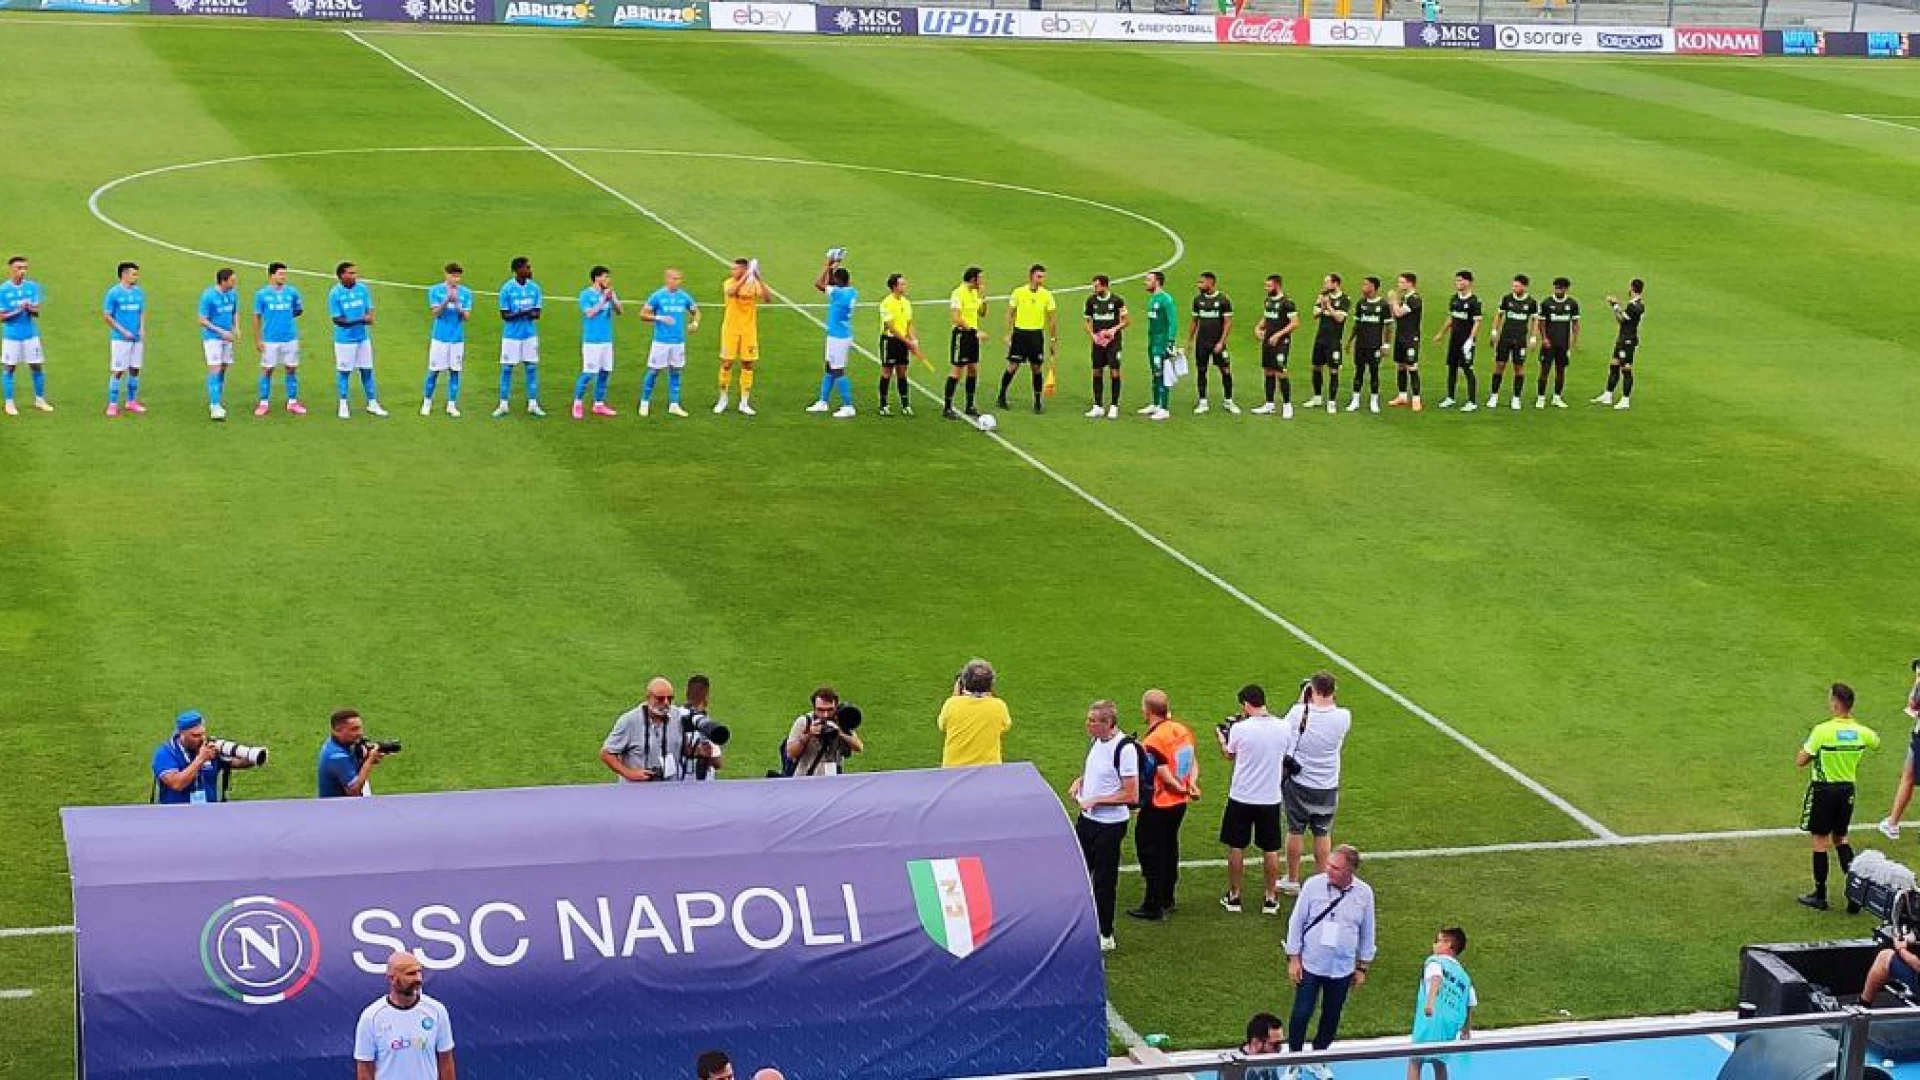 Ritiro estivo del Napoli a Castel DI Sangro, giovedi' la presentazione dell'evento sportivo a Palazzolo Petrucci in via Posillipo